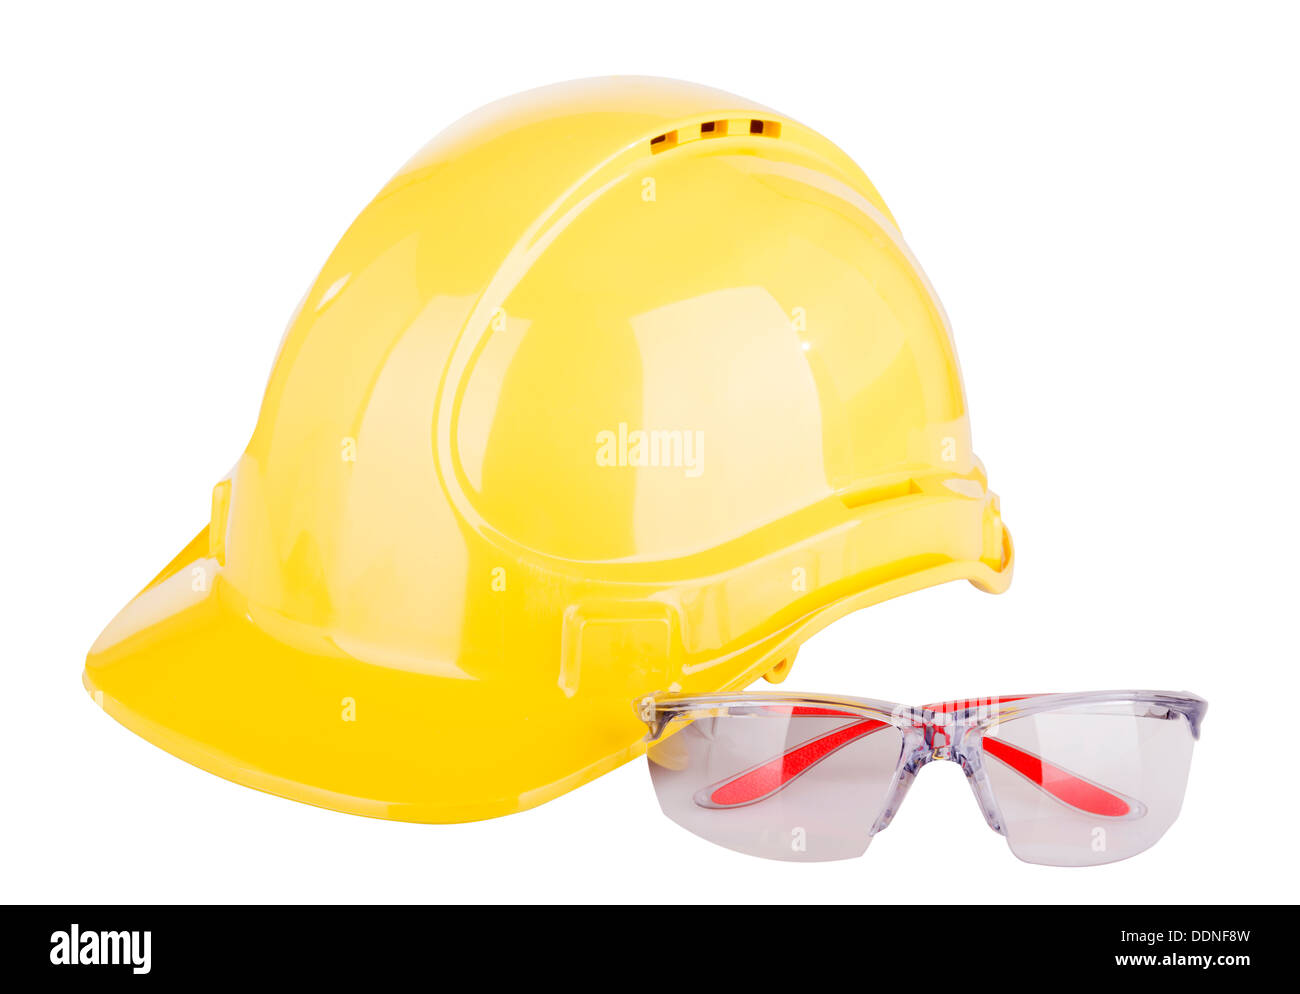 Persönliche Schutzausrüstung oder PSA - persönliche Schutzausrüstung - mit einem Schutzhelm und Schutzbrille isoliert auf weiss Stockfoto